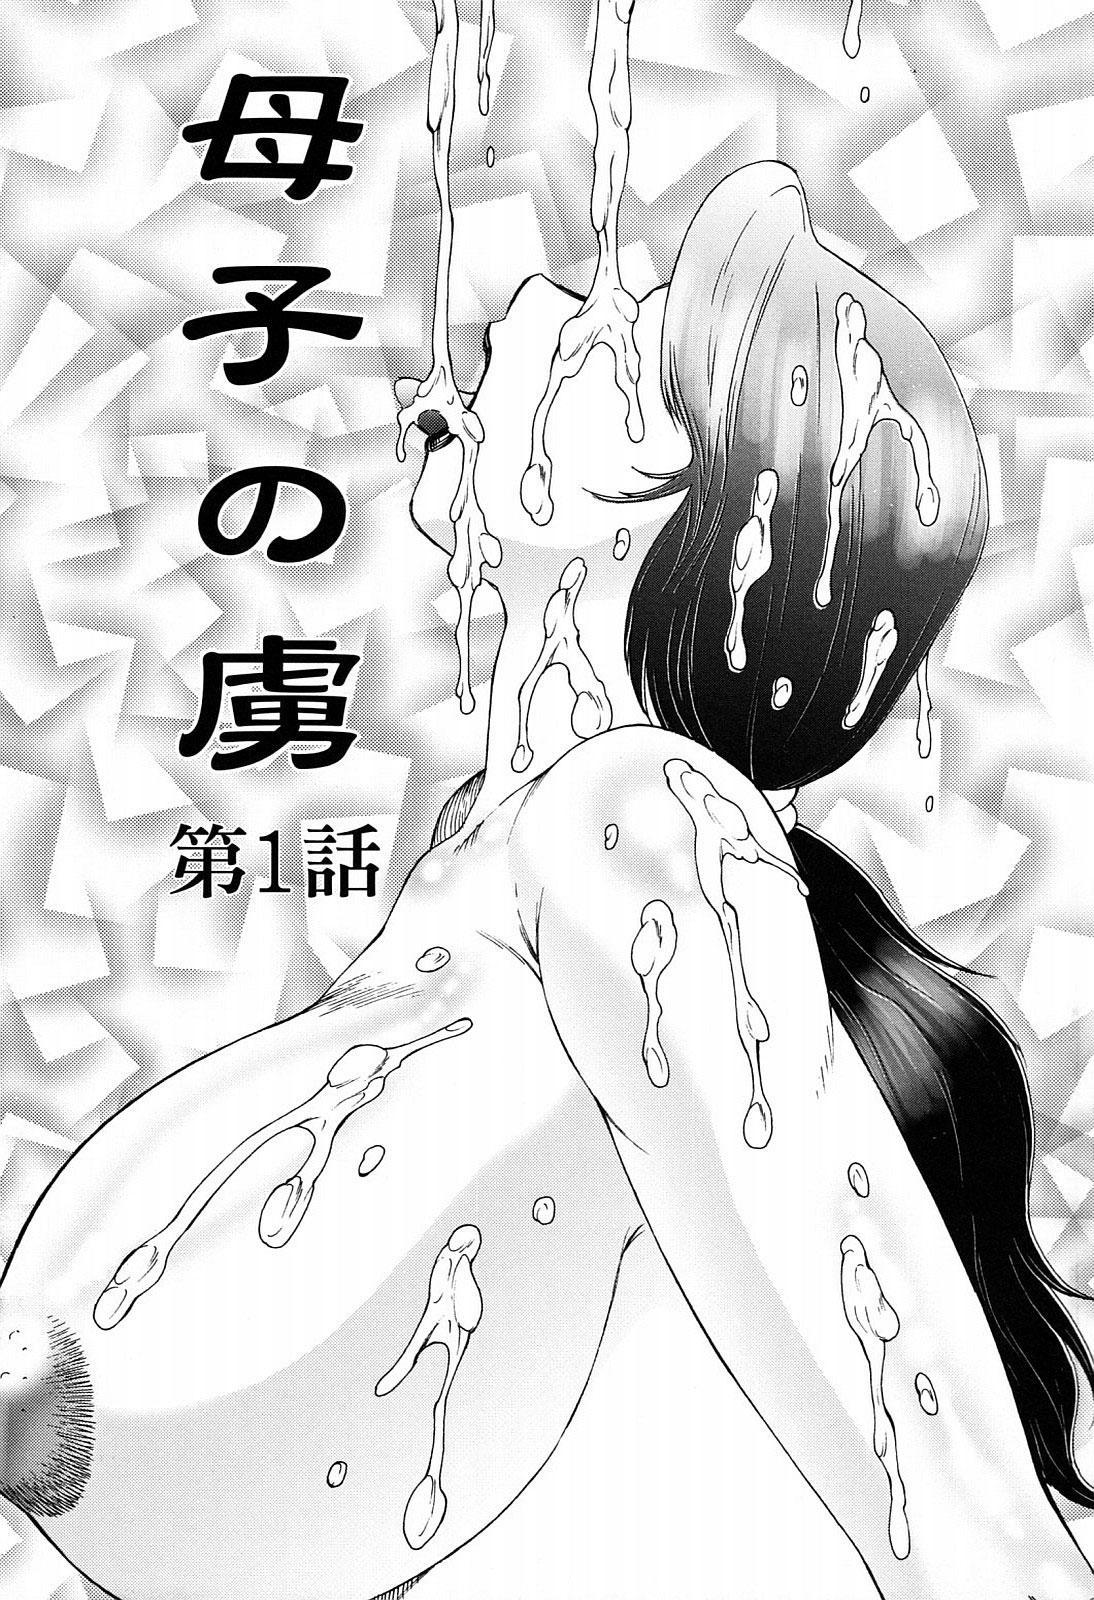 Boshi No Toriko 1 Read Manga Boshi No Toriko 1 Online For Free